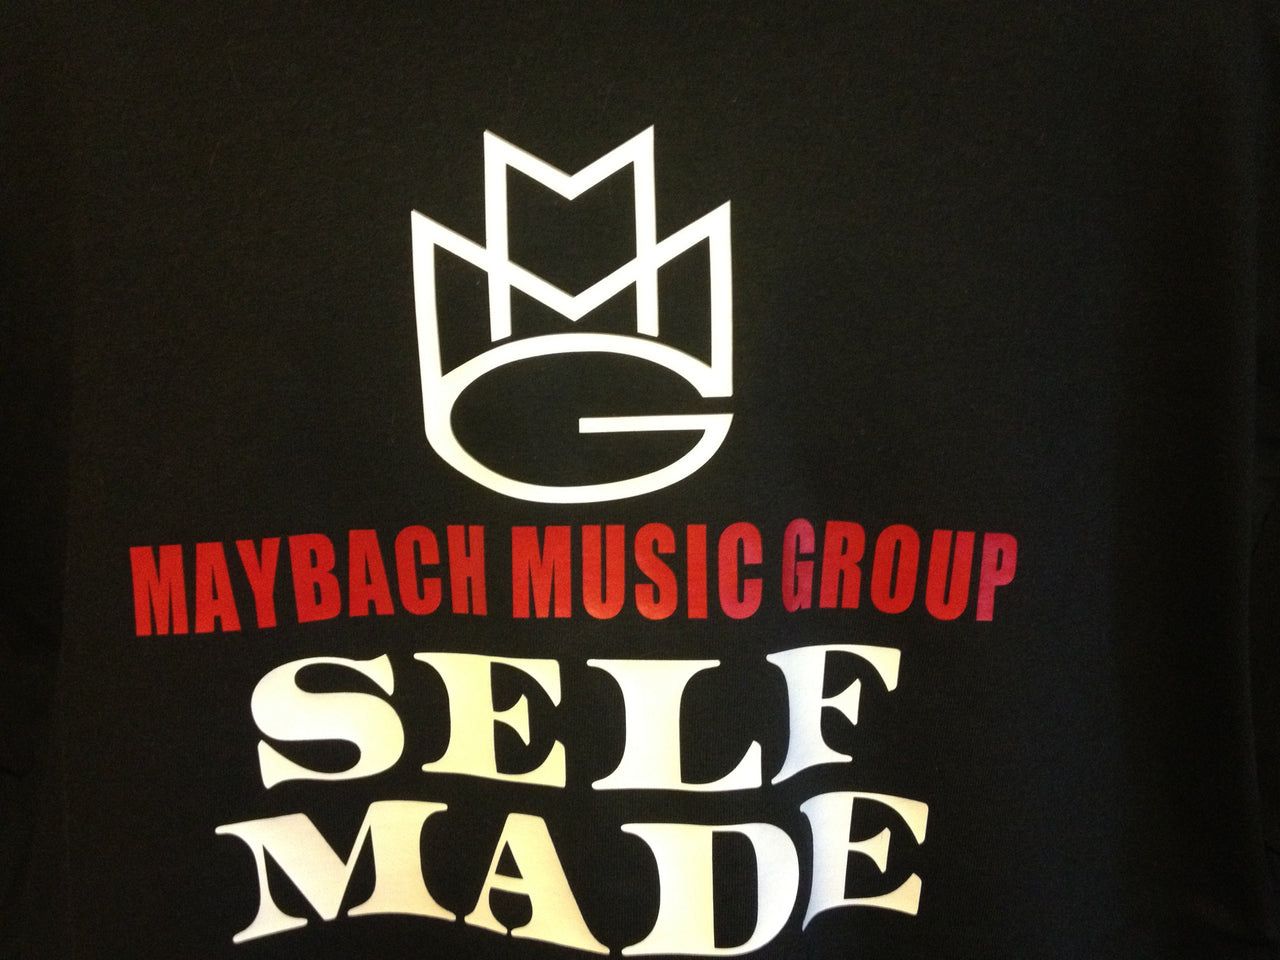 Maybach Music Group "Self Made" Tshirt - TshirtNow.net - 10